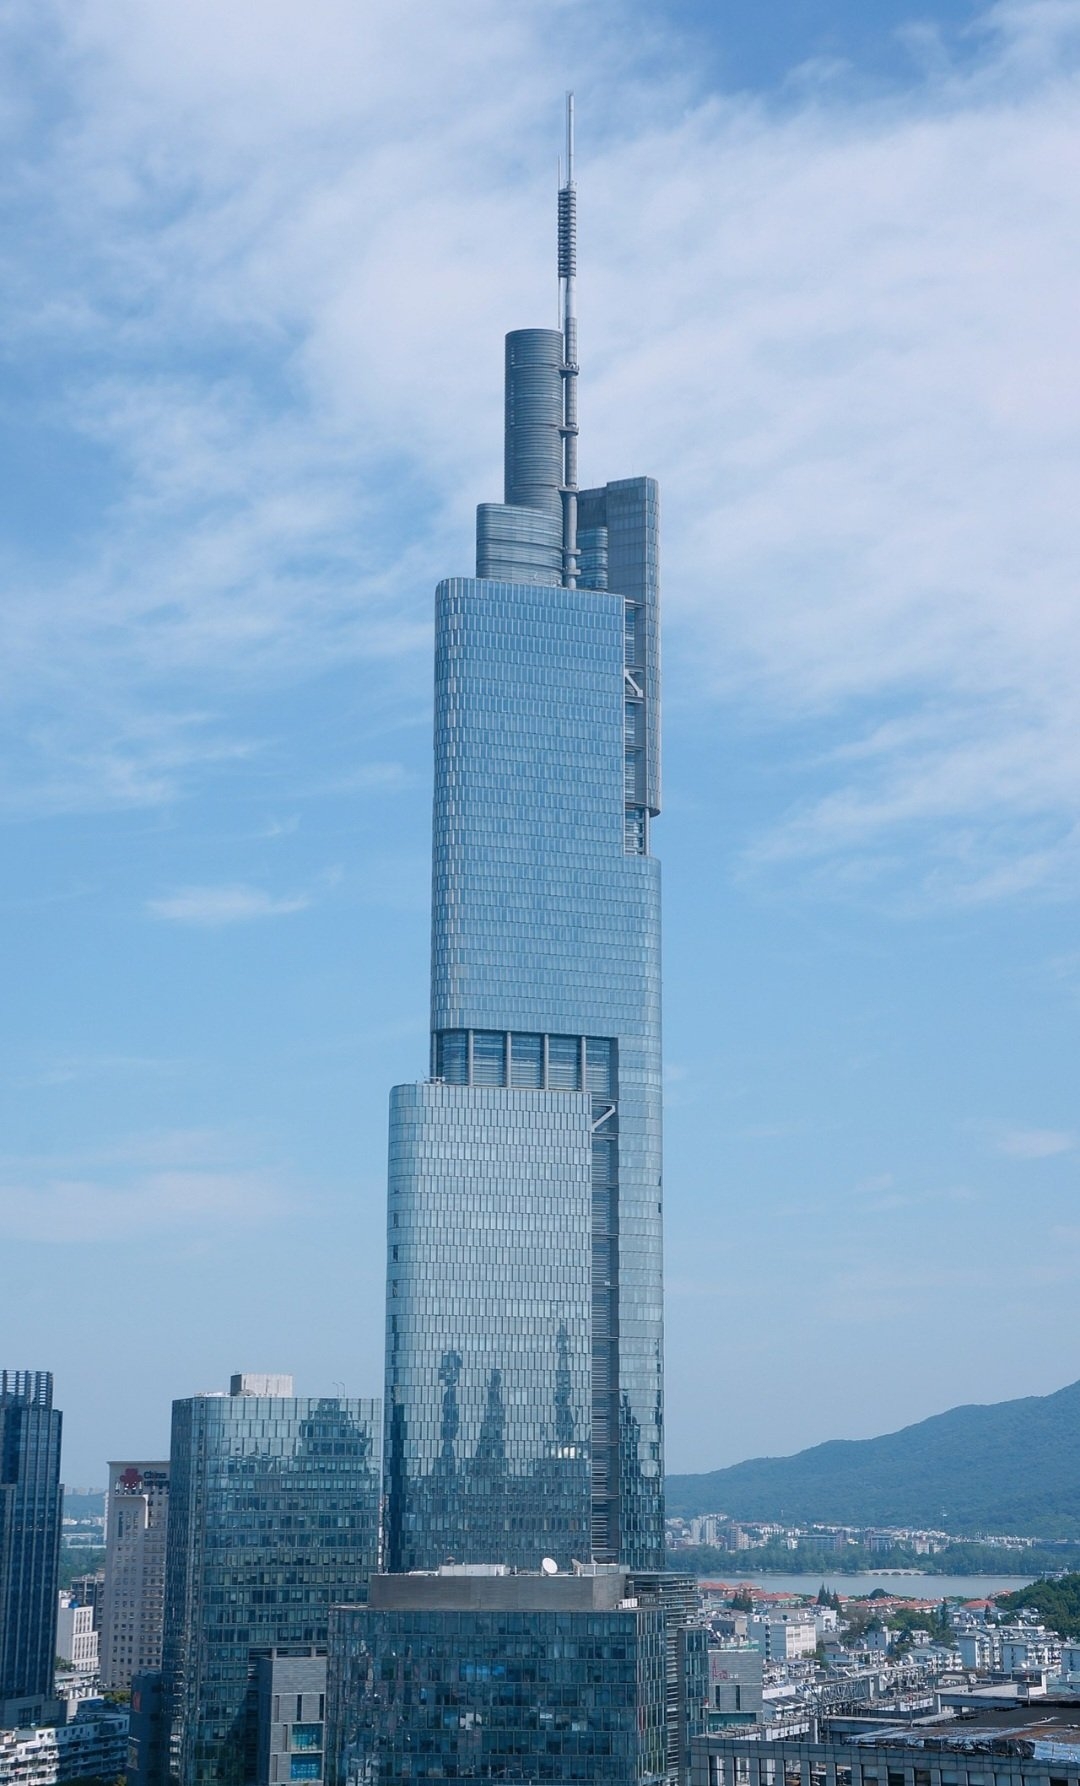 Zifeng Tower - 450 metros - China - Localizada em Nanjing, é uma das estruturas mais impressionantes da cidade. Inaugurada em 2010, a torre possui um design moderno e forma esguia que se destaca no horizonte de Nanjing, sendo uma das principais atrações turísticas da cidade. Reprodução: Flipar